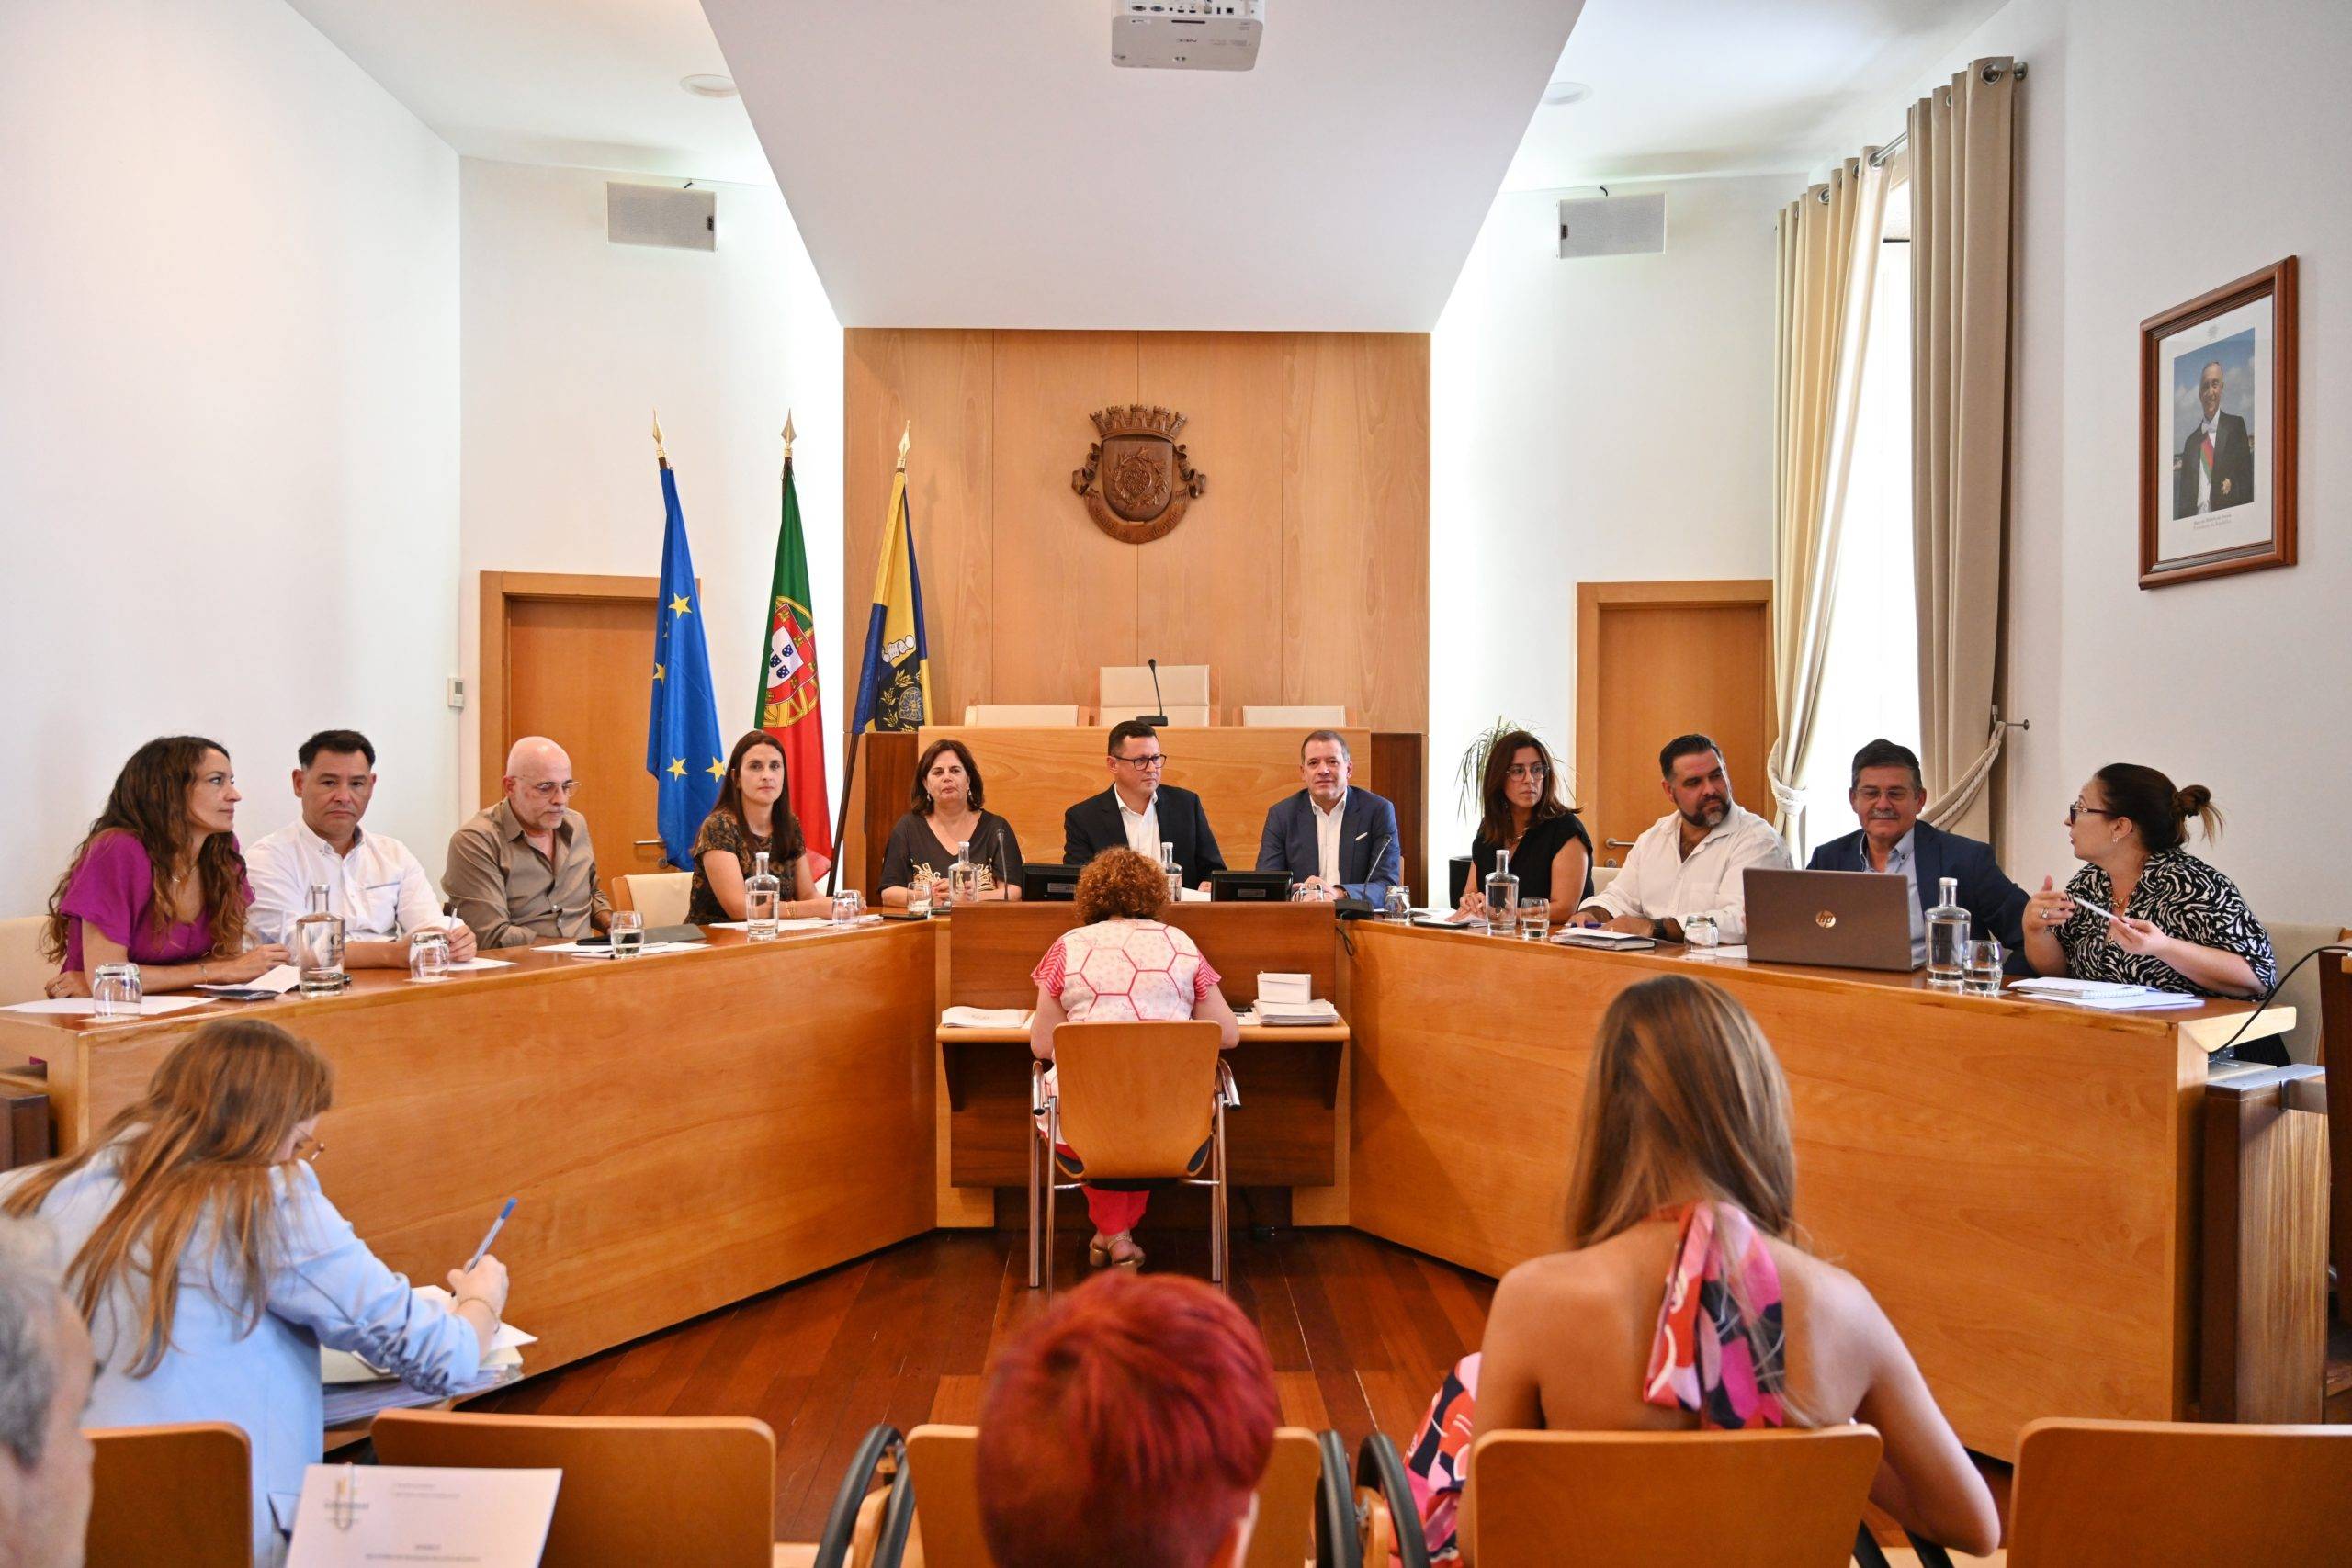 Município de Gondomar apoia associações do concelho com 1,8 milhões de euros